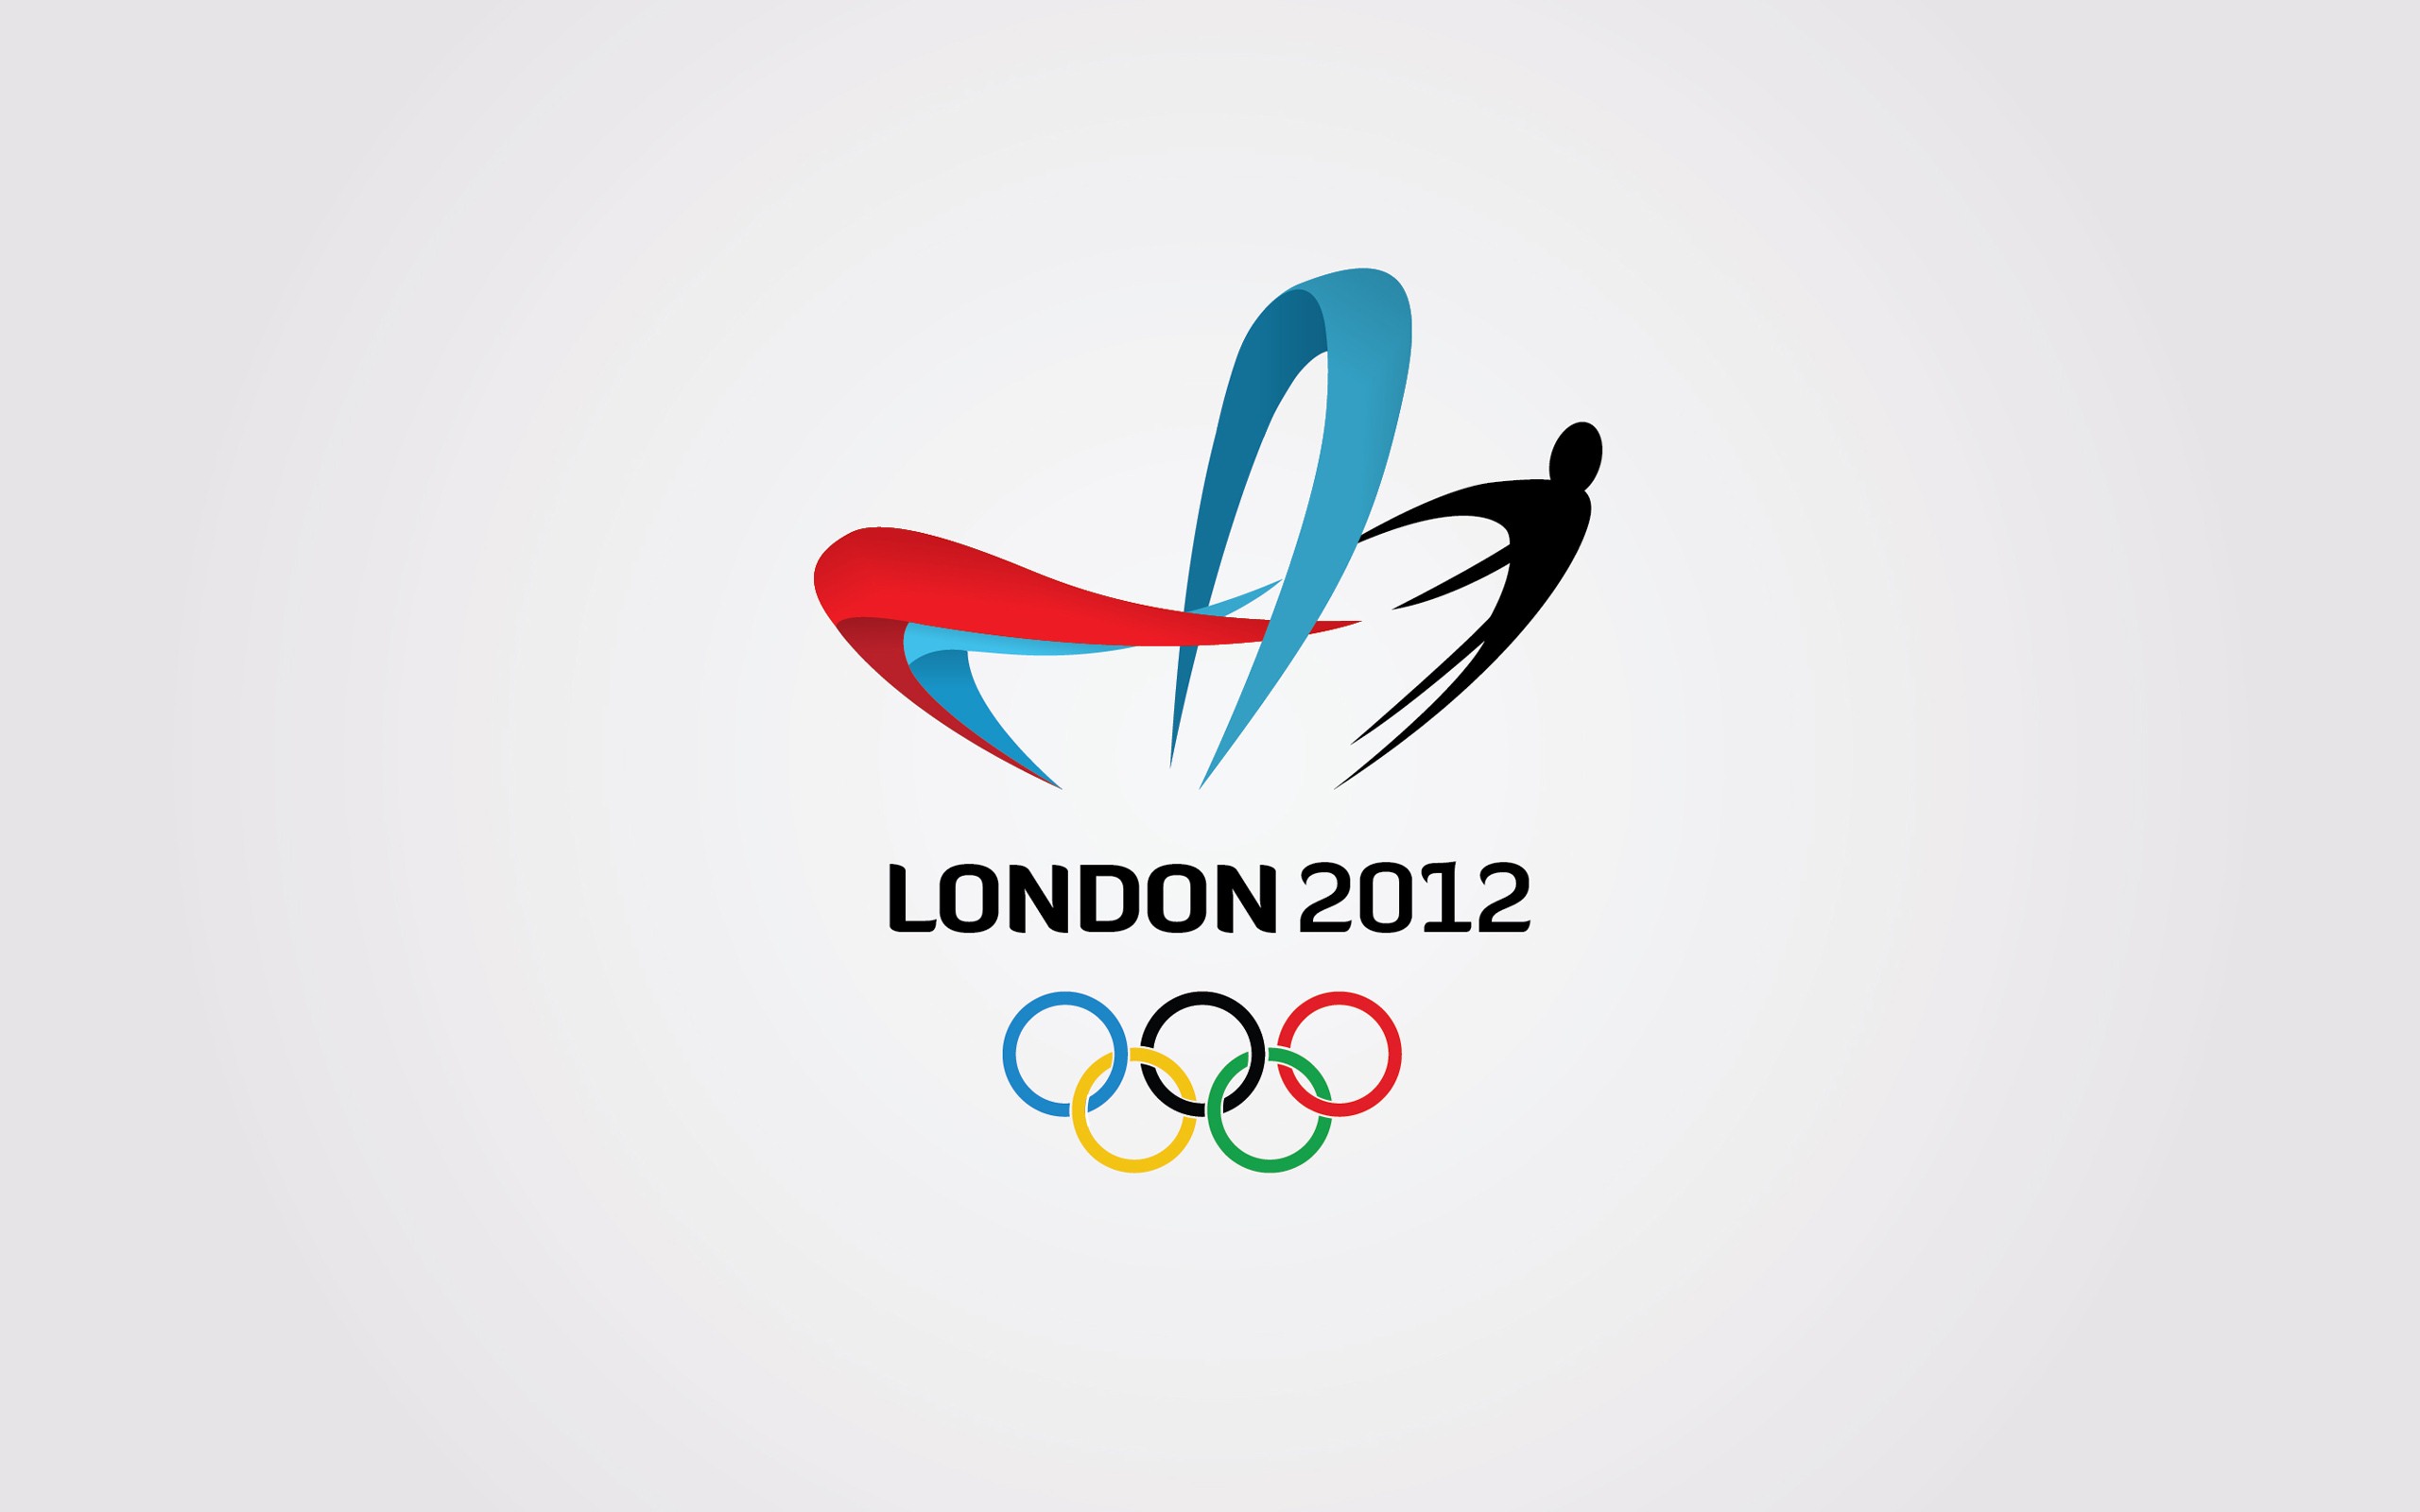 Londres 2012 Olimpiadas fondos temáticos (2) #25 - 2560x1600